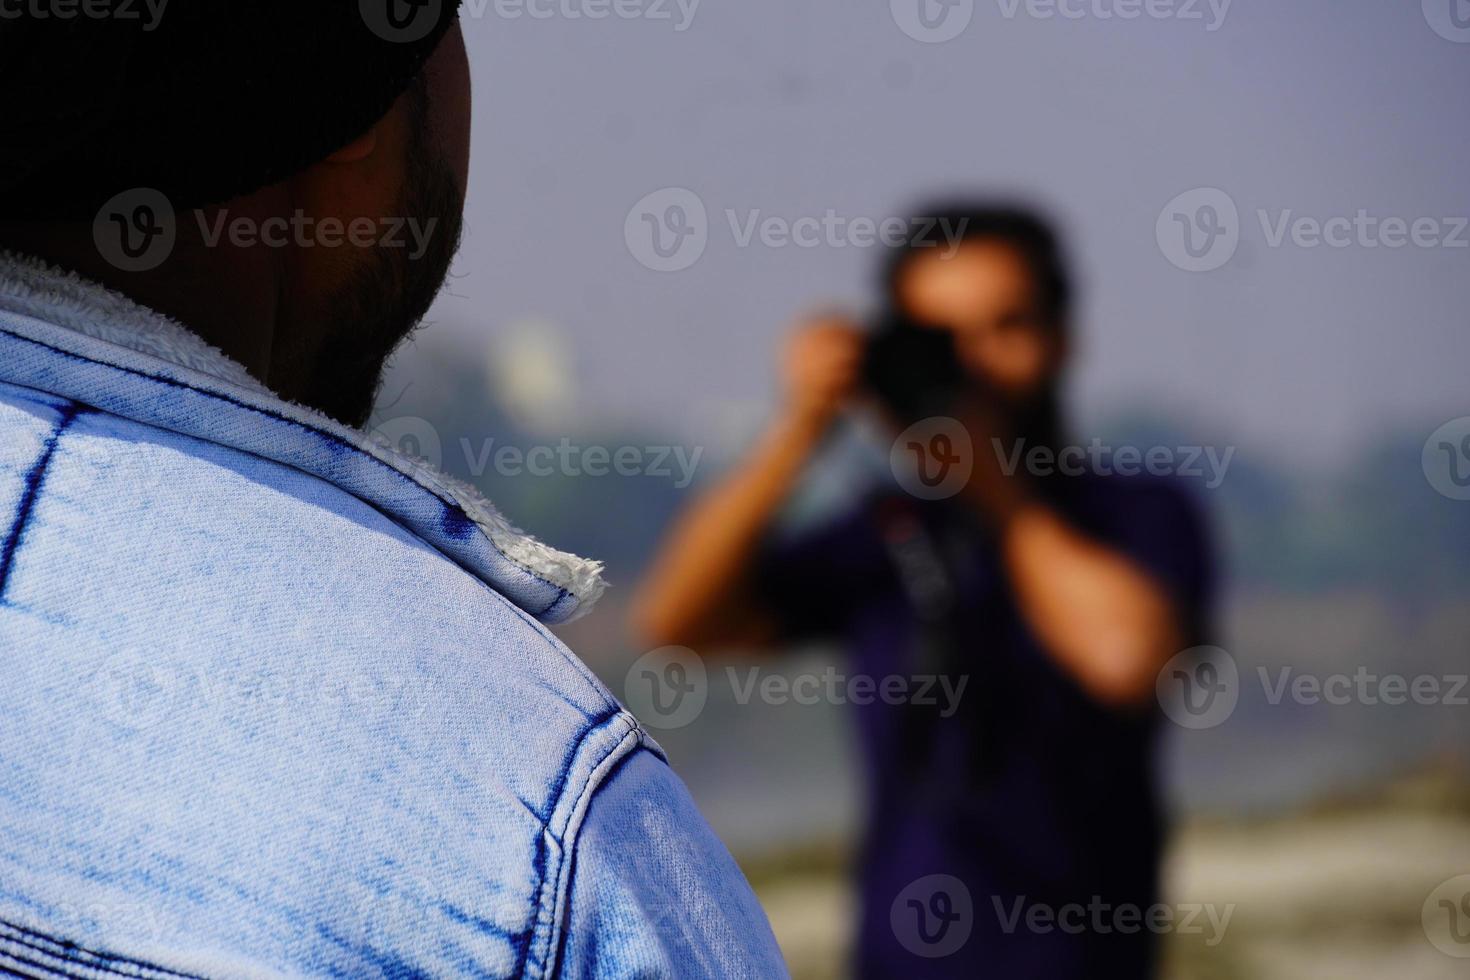 camarógrafo tomando una foto con una cámara